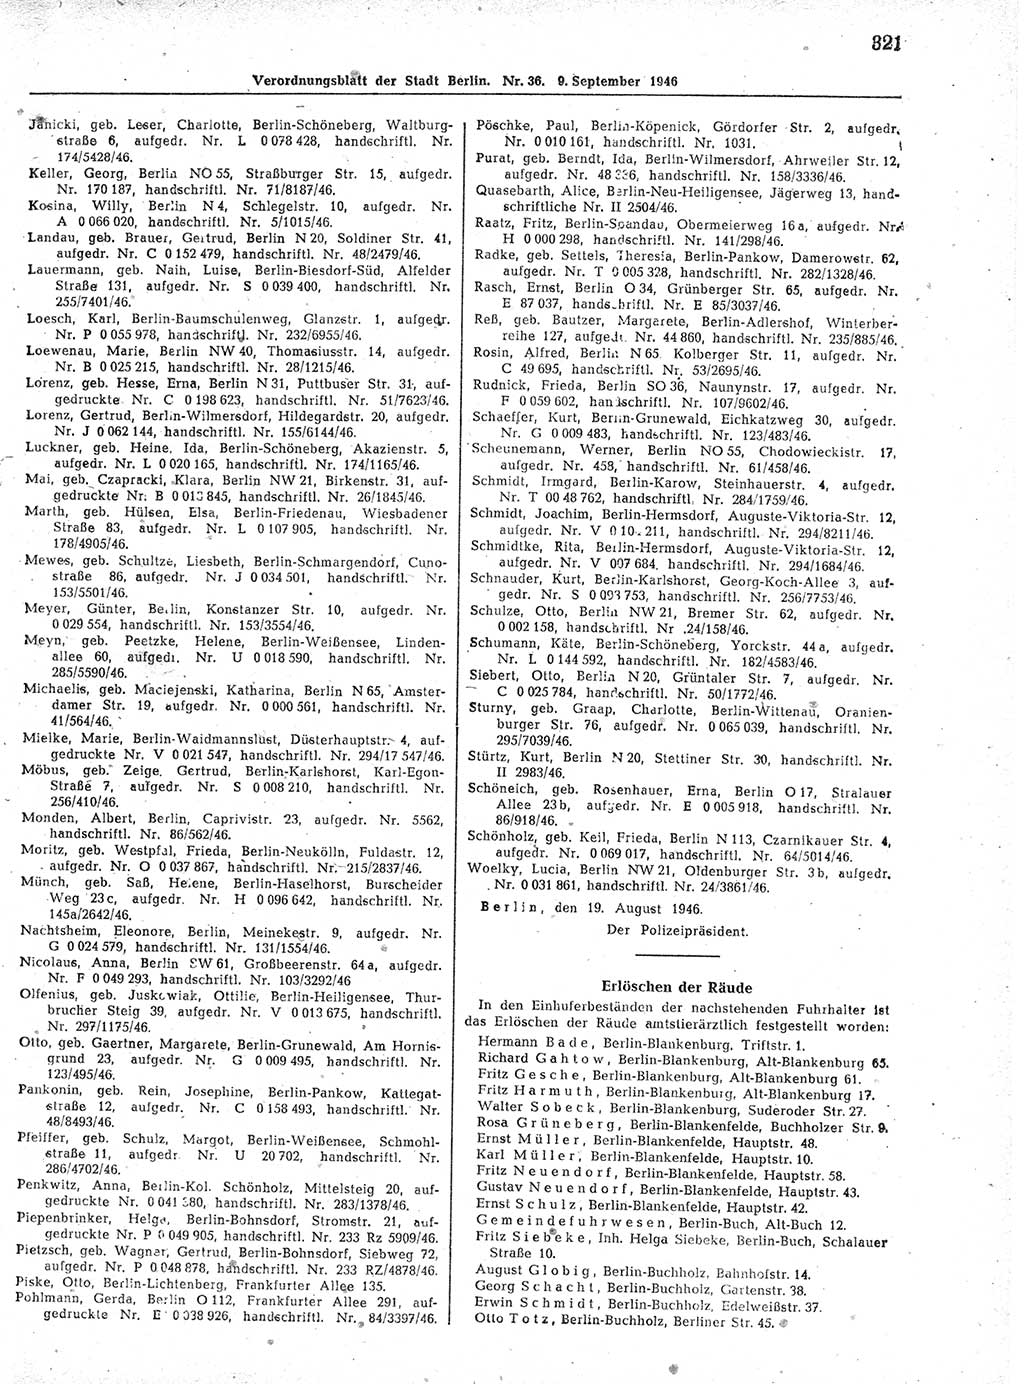 Verordnungsblatt (VOBl.) der Stadt Berlin, für Groß-Berlin 1946, Seite 321 (VOBl. Bln. 1946, S. 321)